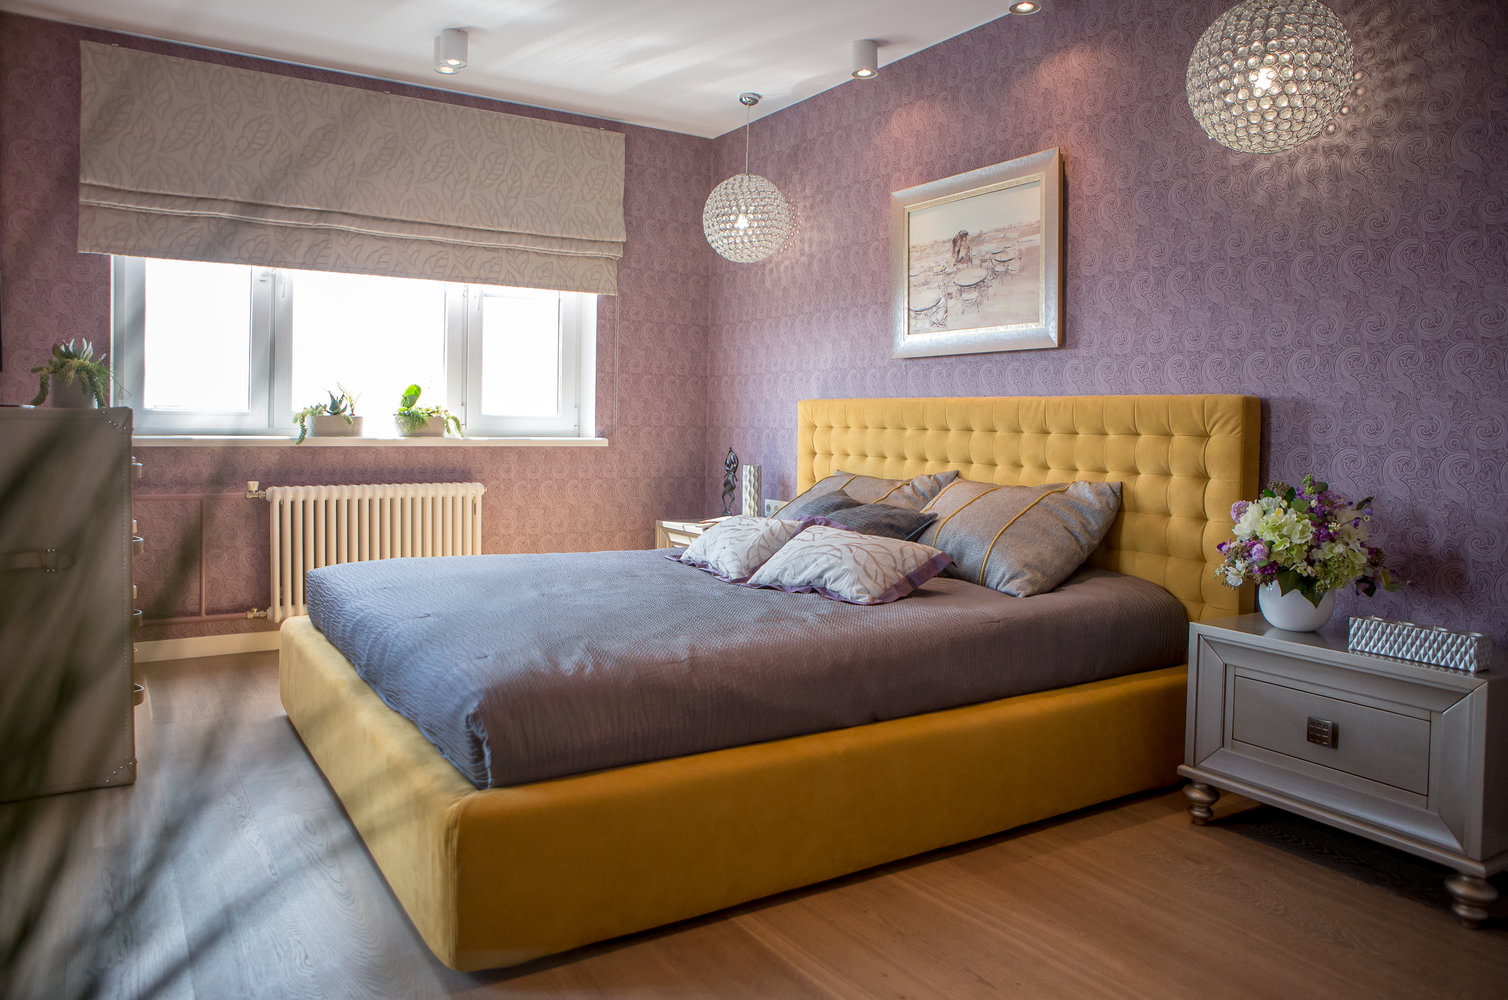 Горчичная кровать. Кровать в интерьере спальни. Спальня в горчичном цвете. Желтая кровать в интерьере. Горчичный цвет в интерьере спальни.